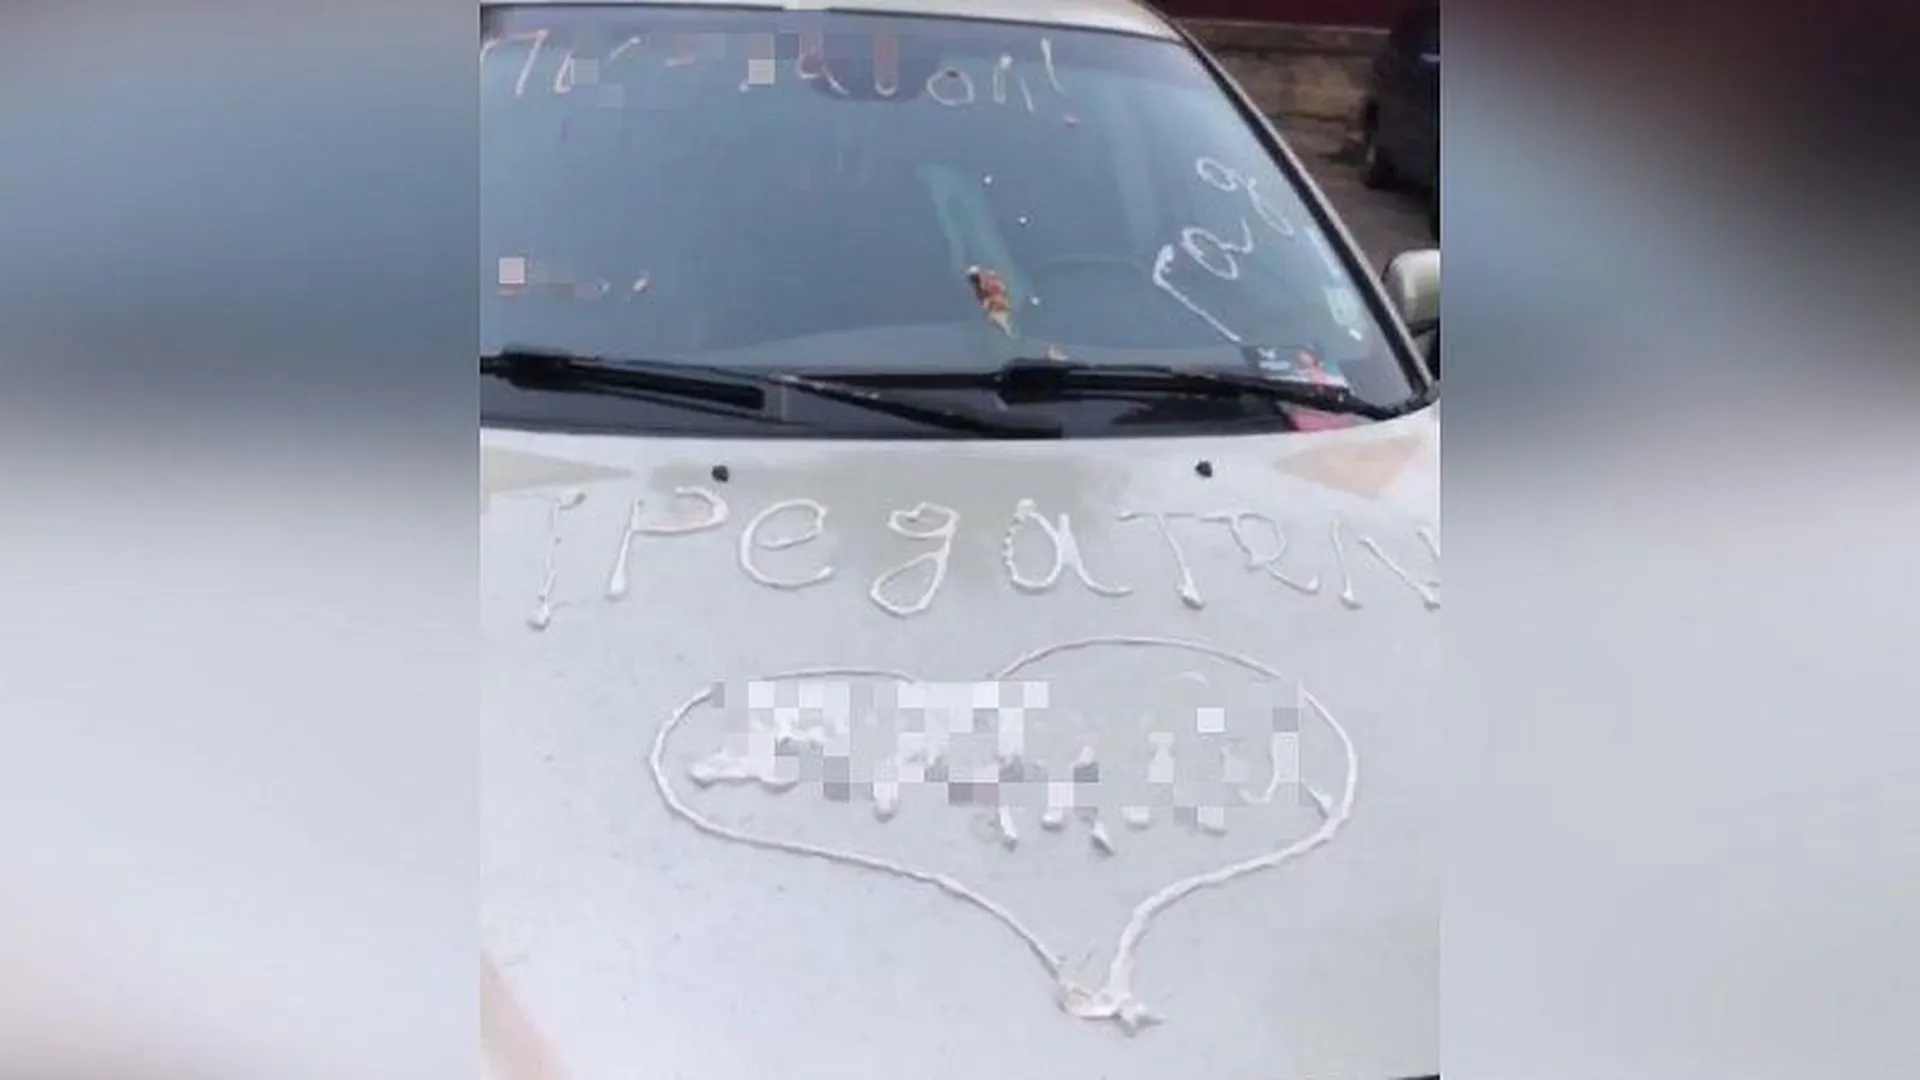 Оскорбительные послания на авто, нанесенные зубной пастой, оставили для жителя Реутова